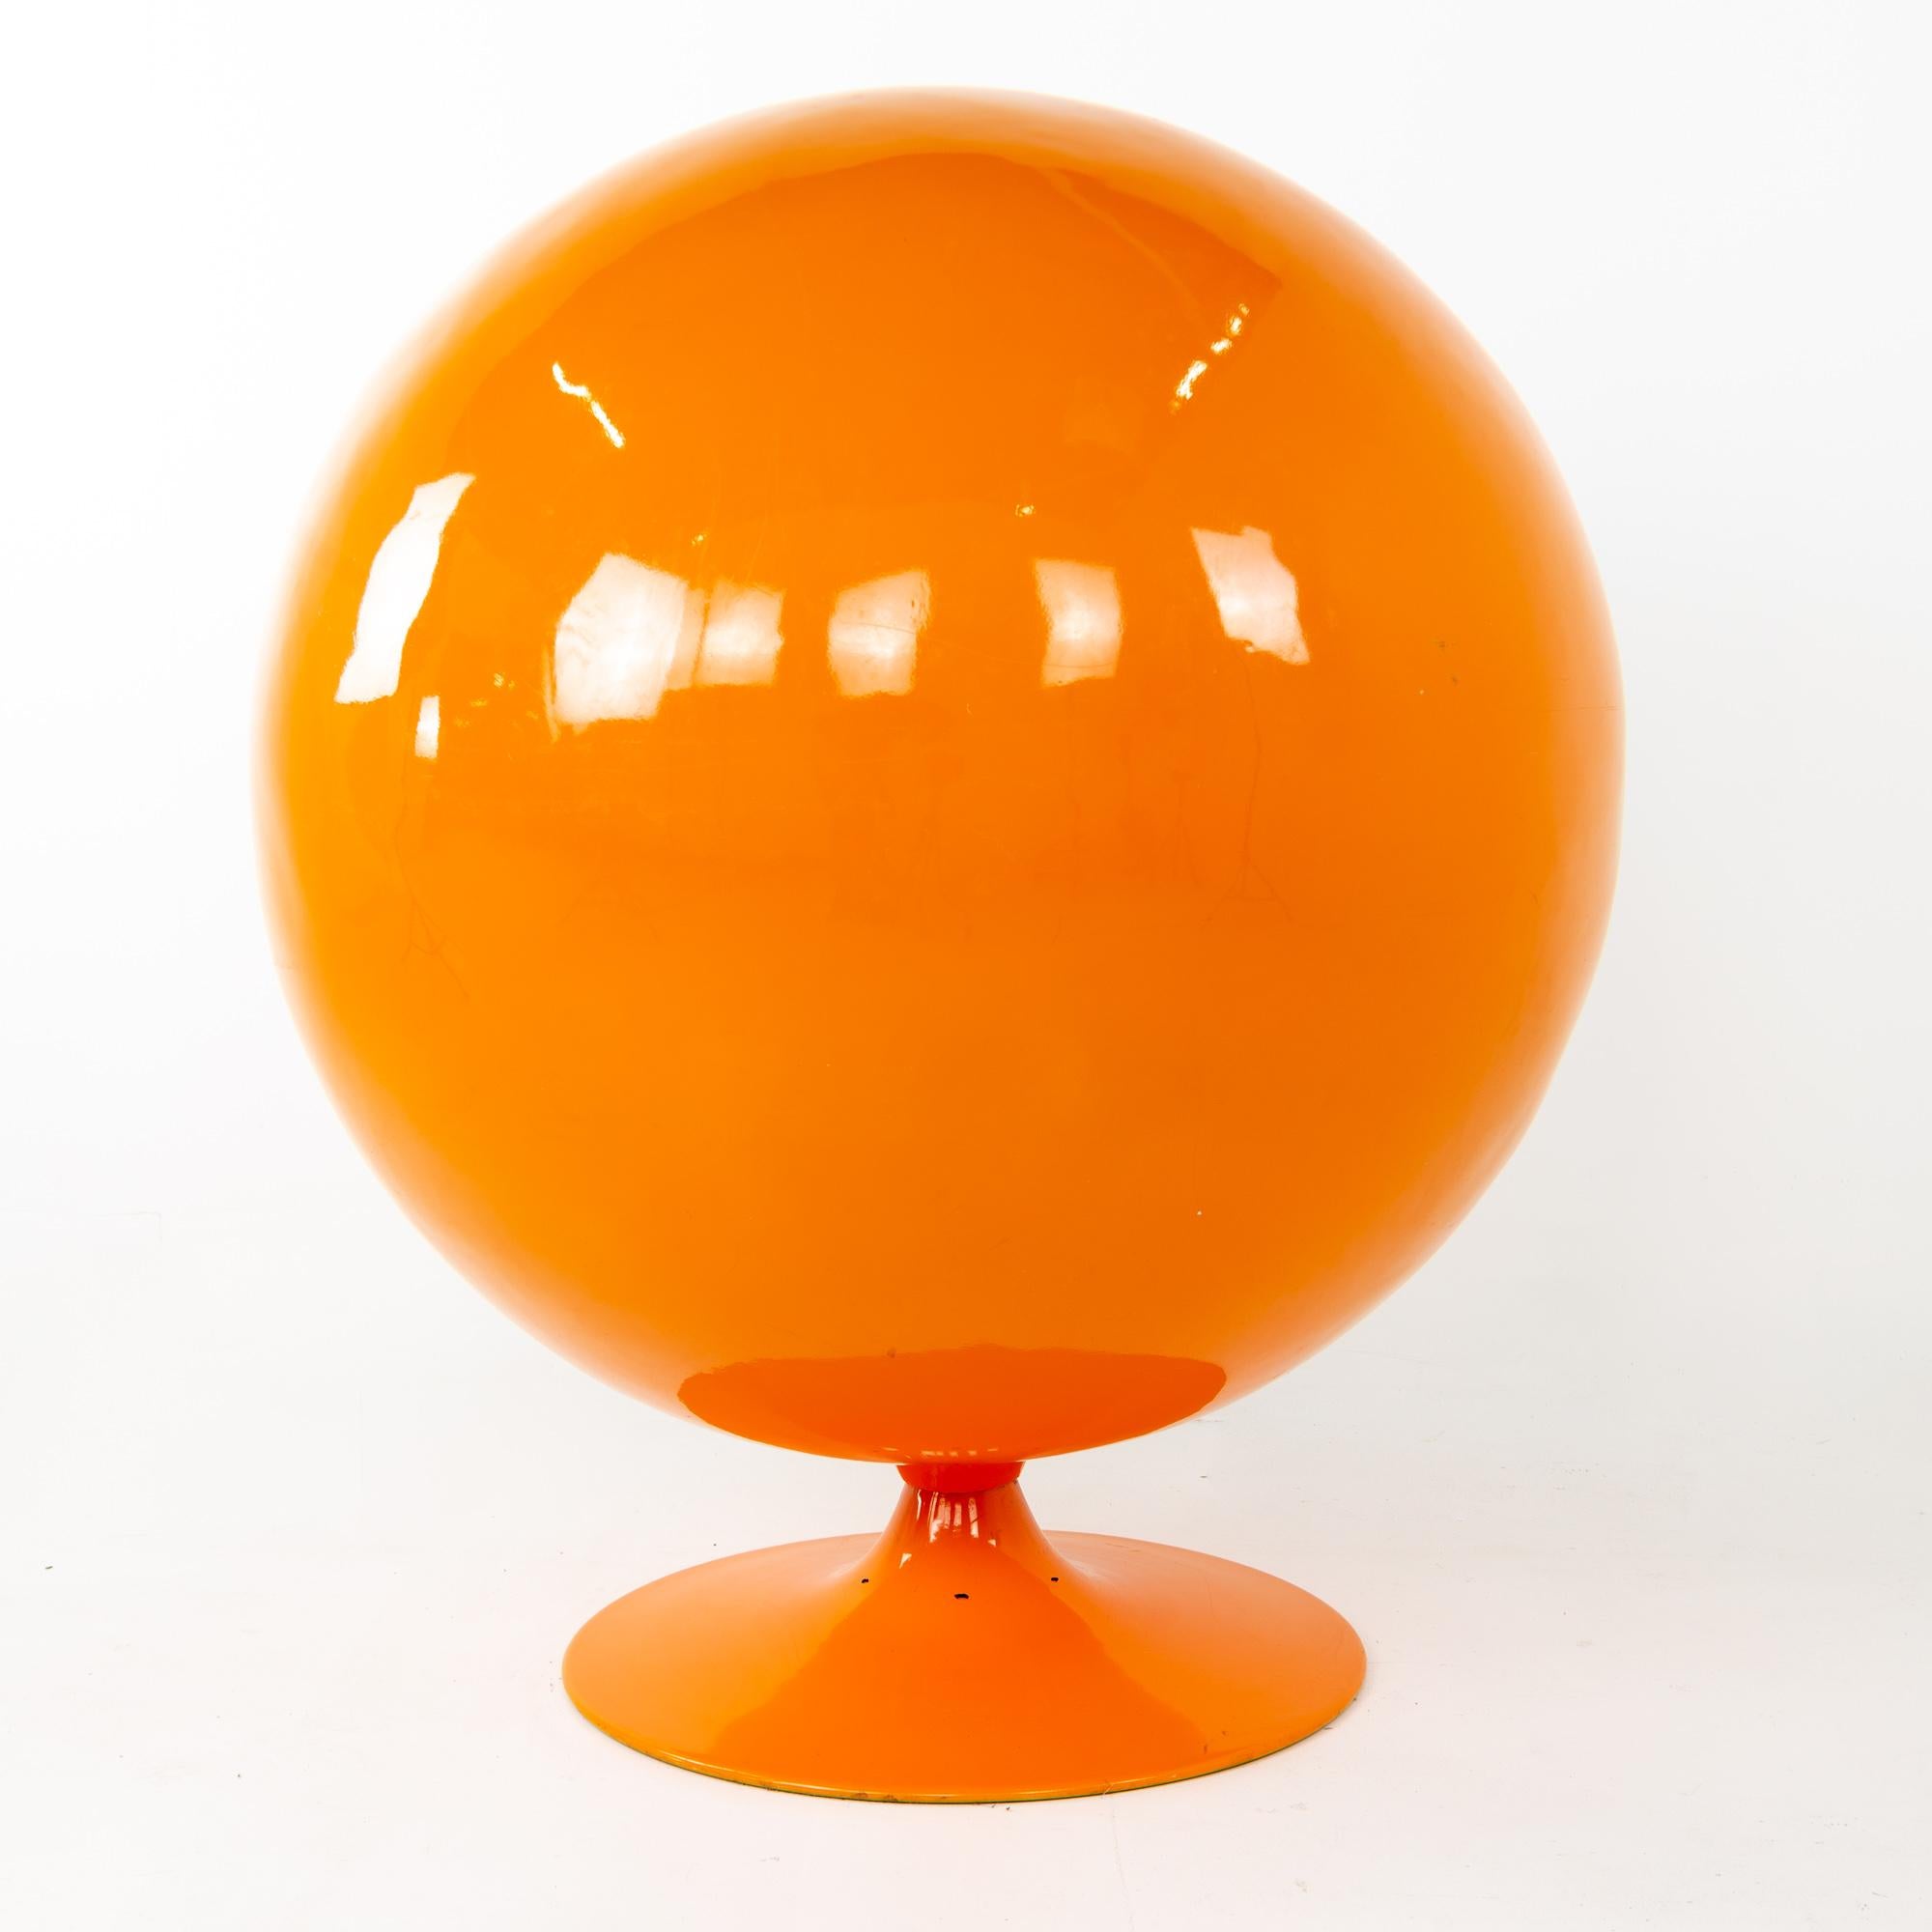 Late 20th Century Eero Aarnio Style Midcentury Orange Ball Chair